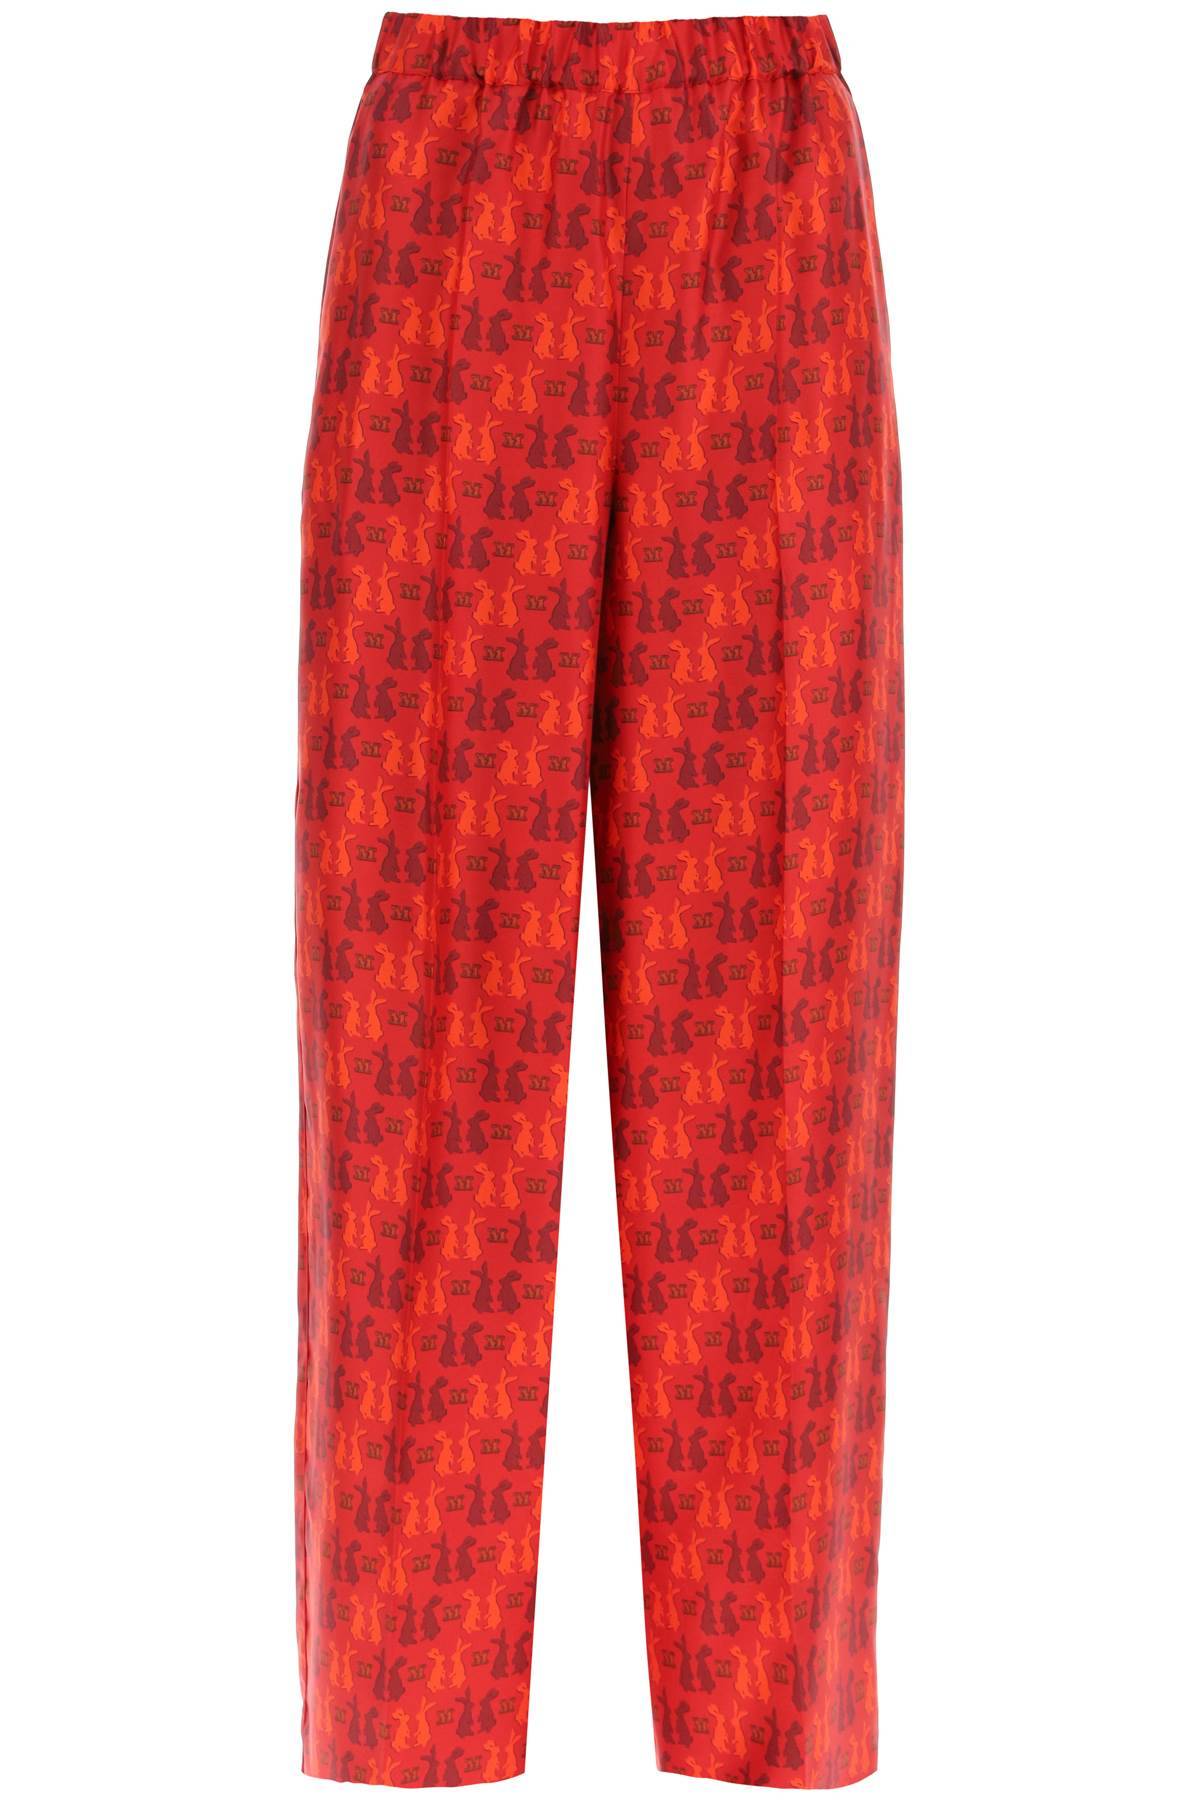 Max Mara Printed Silk Pyjamas Trousers In Red